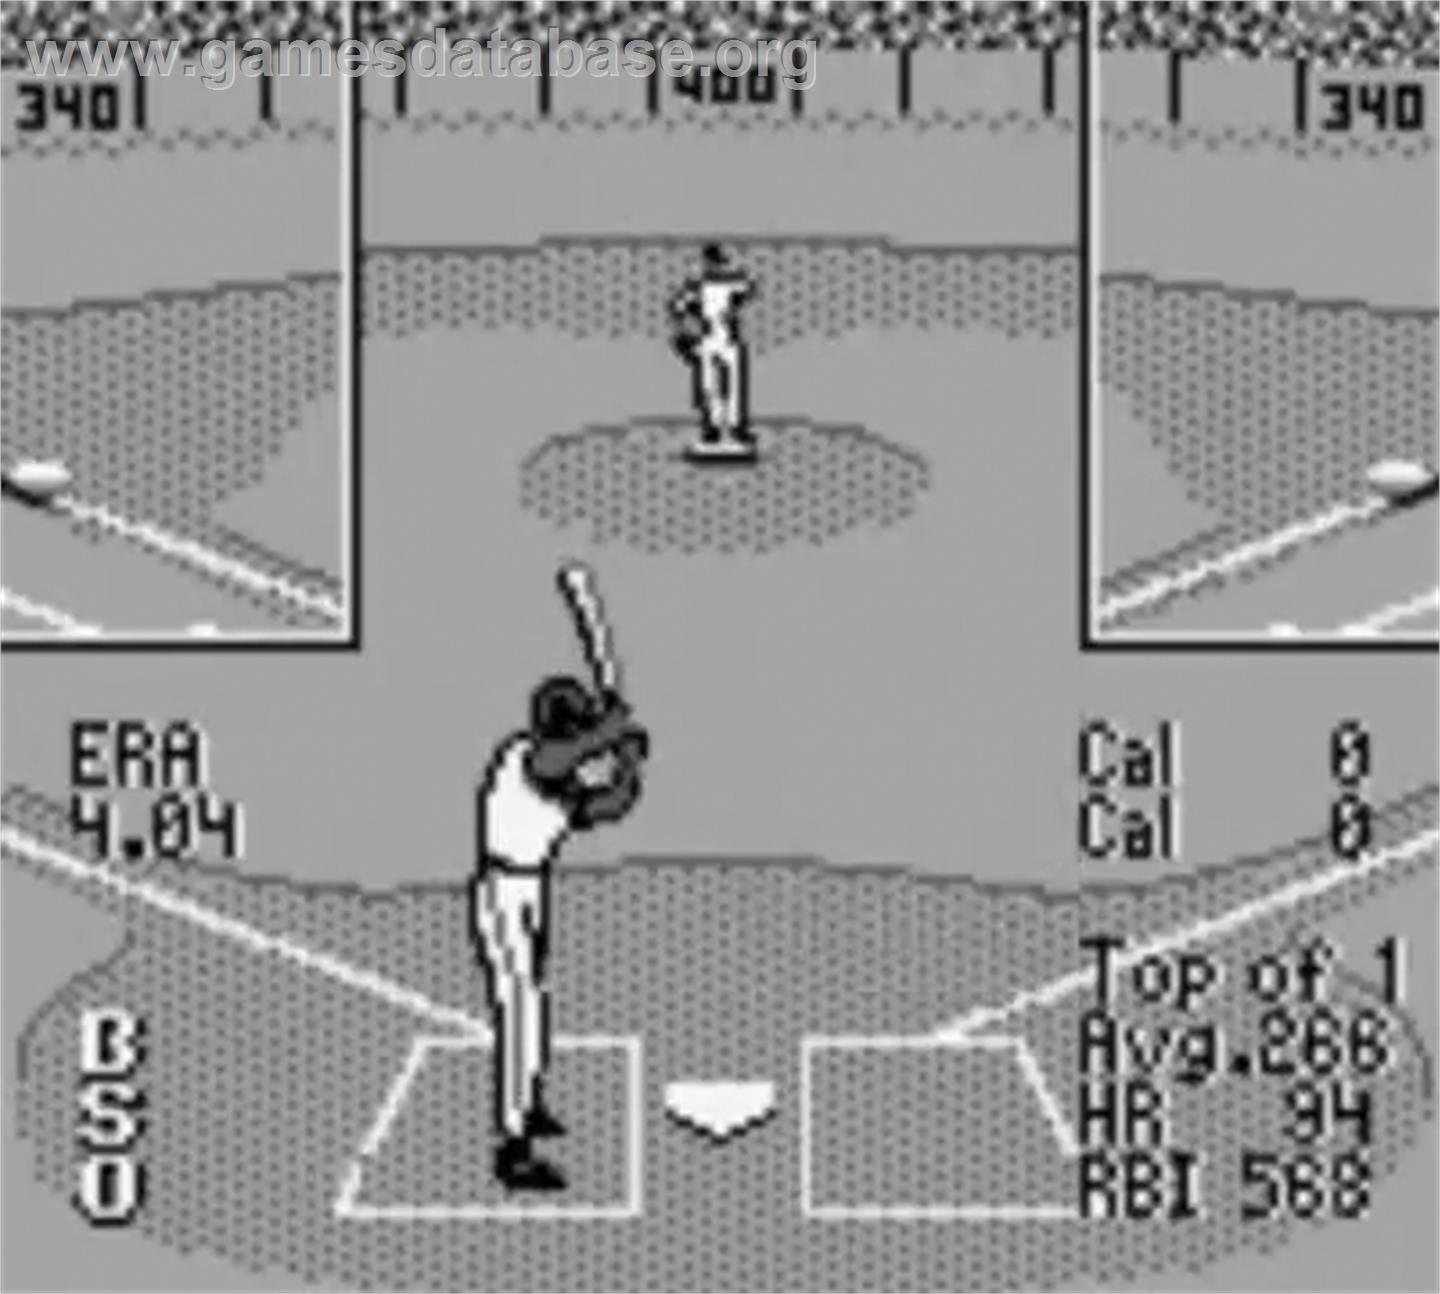 Frank Thomas' Big Hurt Baseball - Nintendo Game Boy - Artwork - In Game